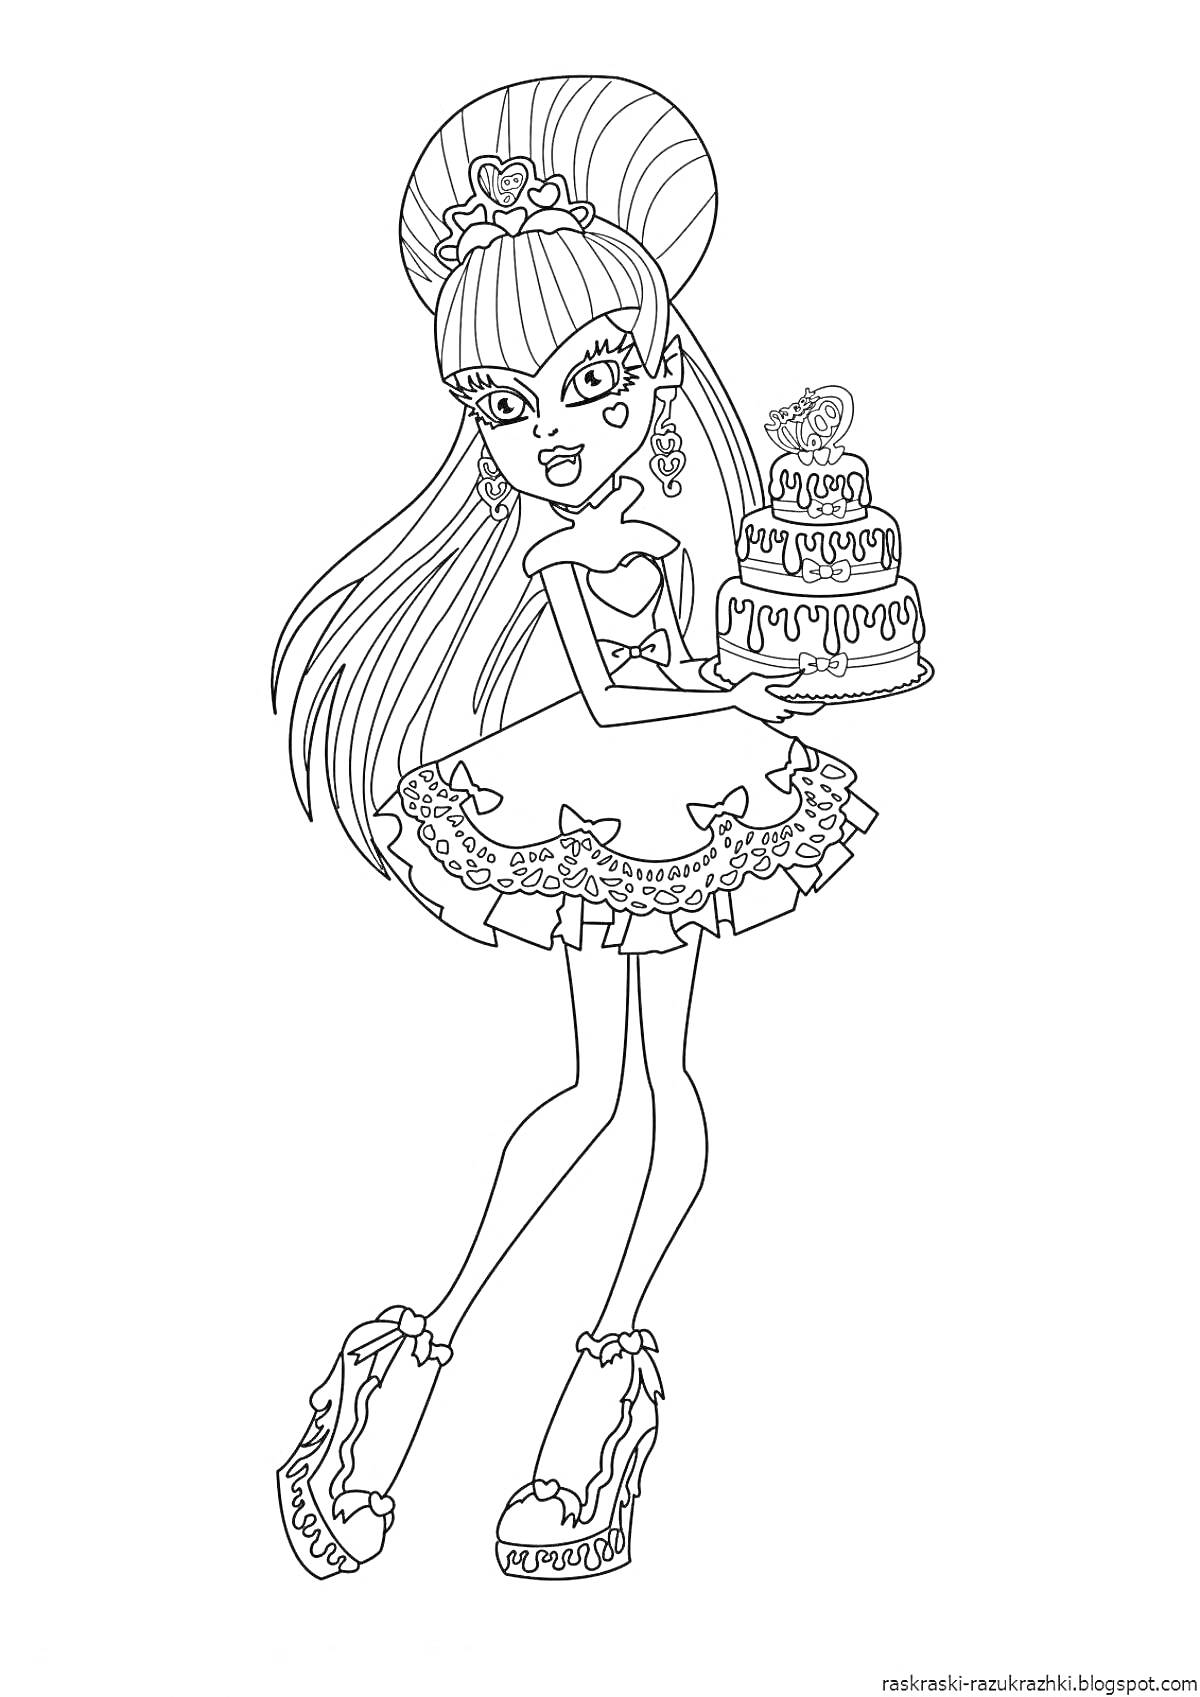 Раскраска Девушка из Монстер Хай с высокой прической держит торт на несколько ярусов, украшенный глазом